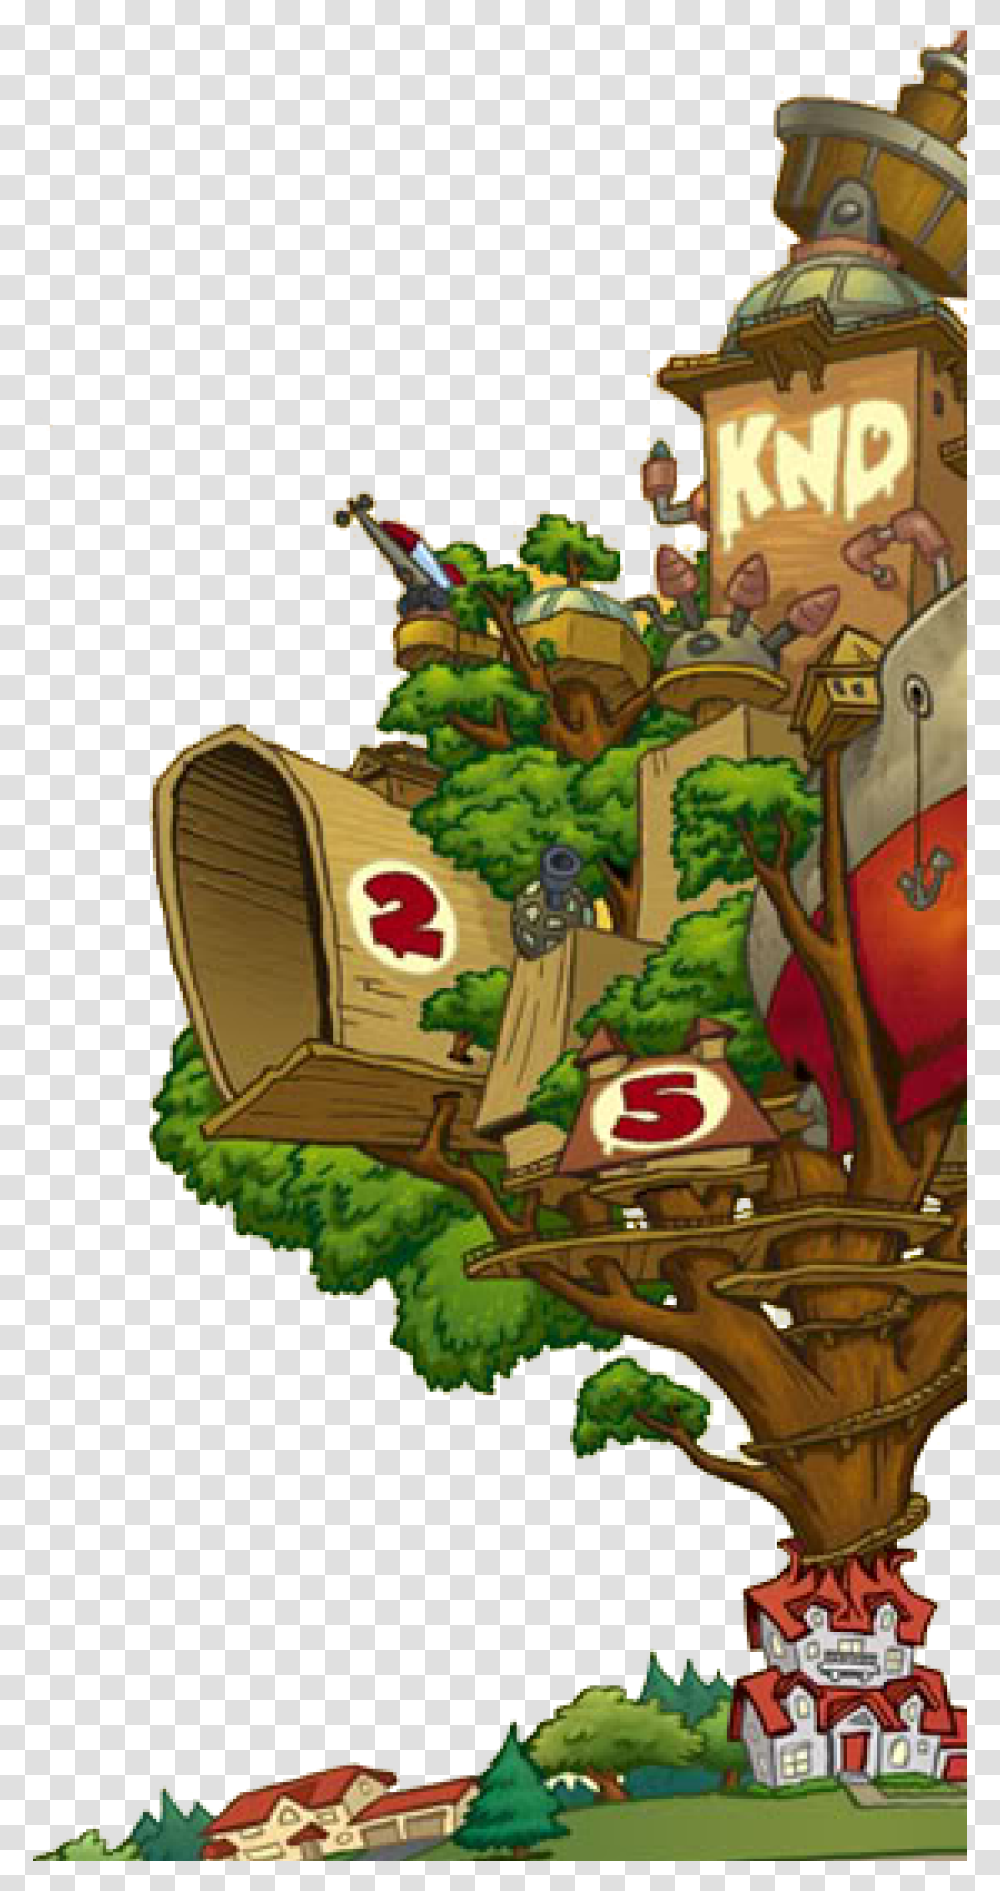 Background Image Kids Next Door Tree House, Angry Birds, Legend Of Zelda, Vegetation, Plant Transparent Png